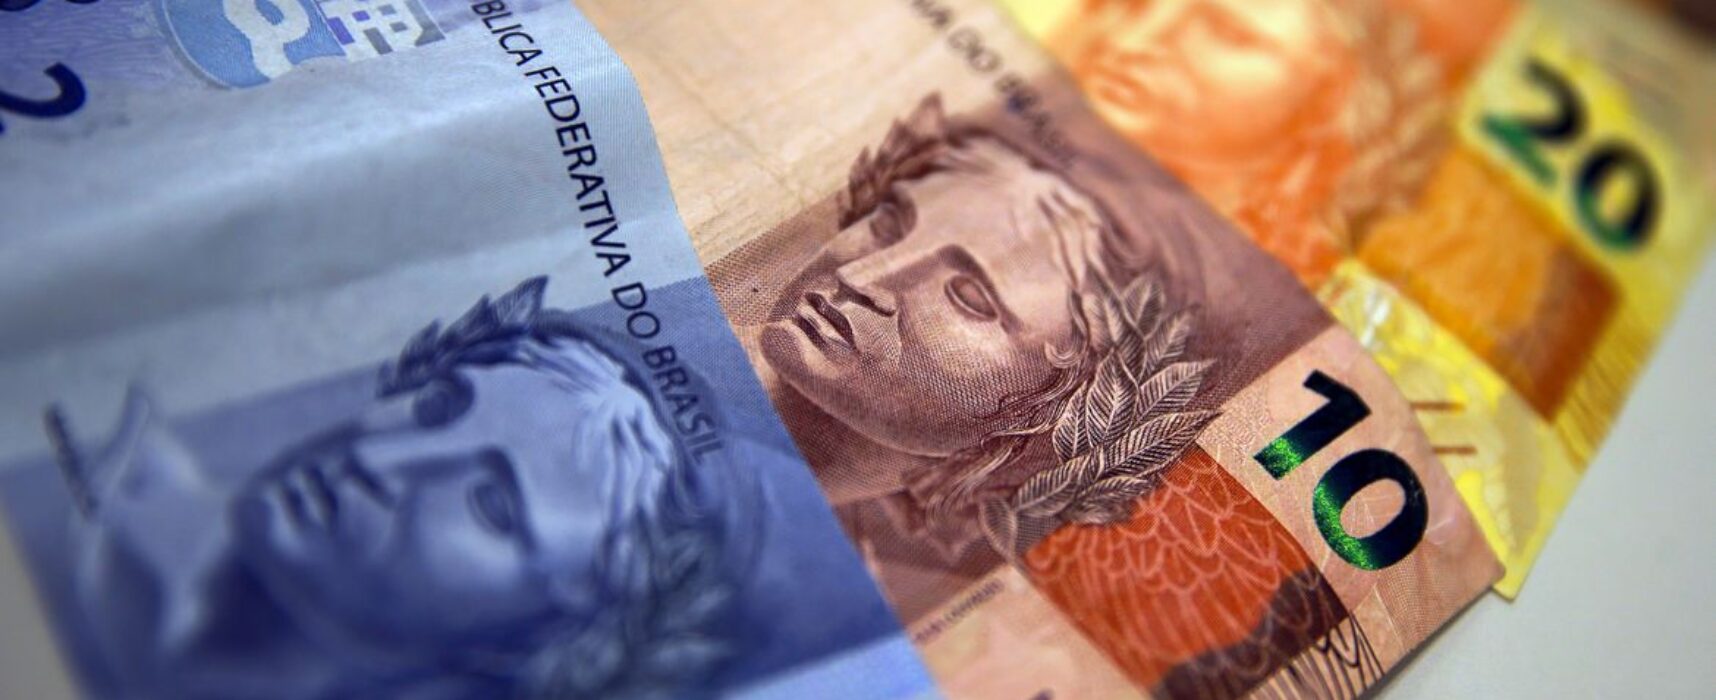 Arrecadação de impostos em janeiro somou R$ 180,221 bilhões